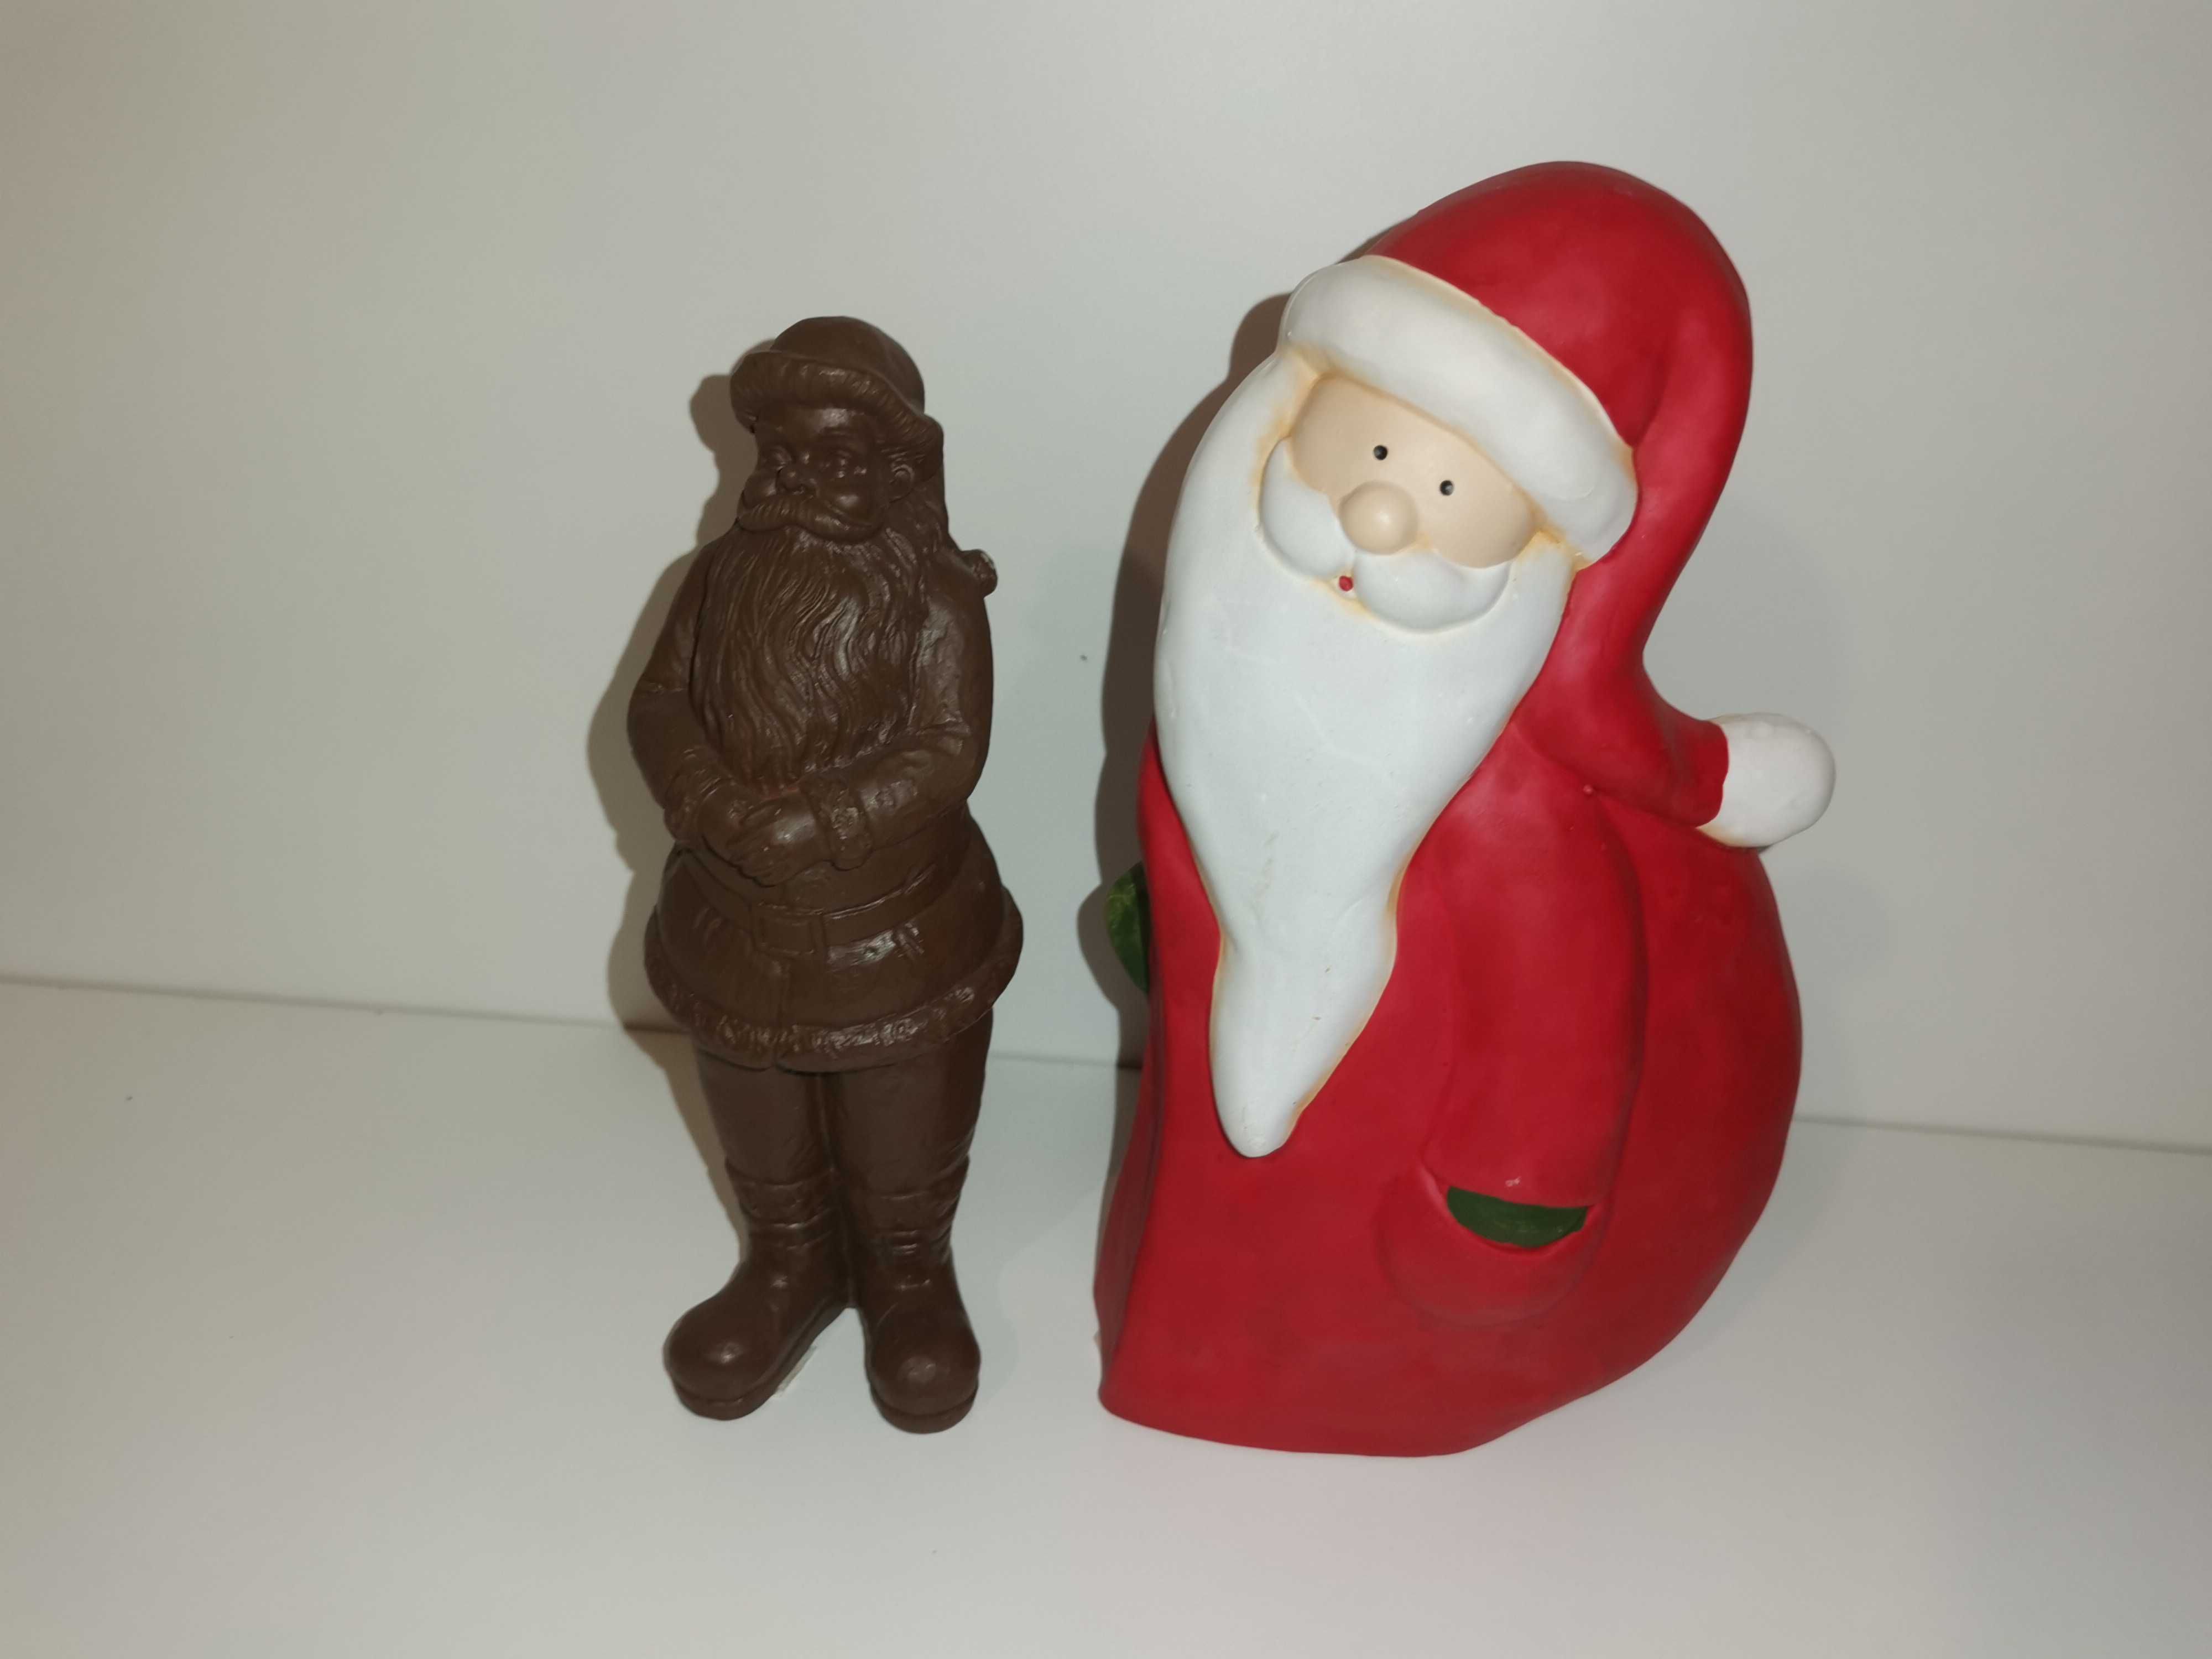 Ozdoby świąteczne - Figurki x 2 - Św. Mikołaj na Boże Narodzenie